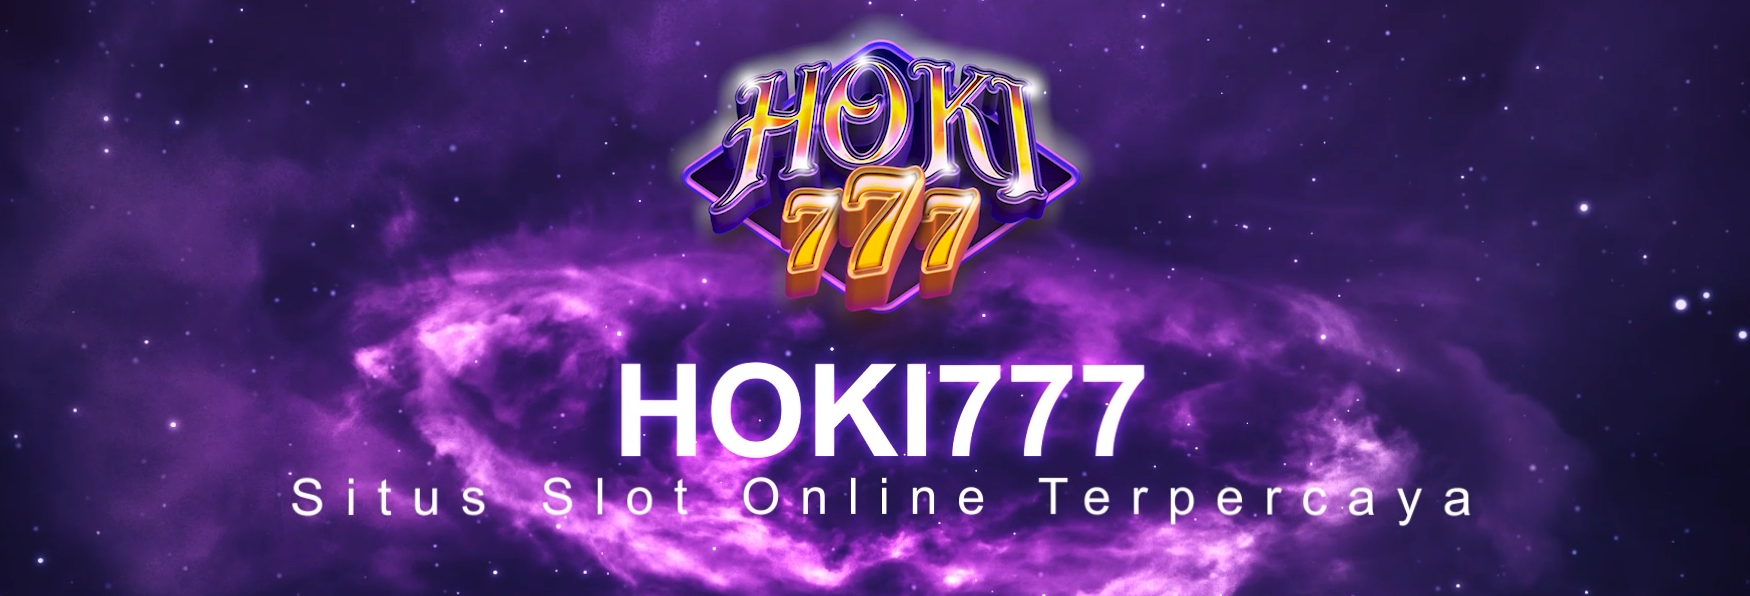 Mengapa Agen Hoki777 Lebih Unggul? Daripada Situs Taruhan Online Lainnya